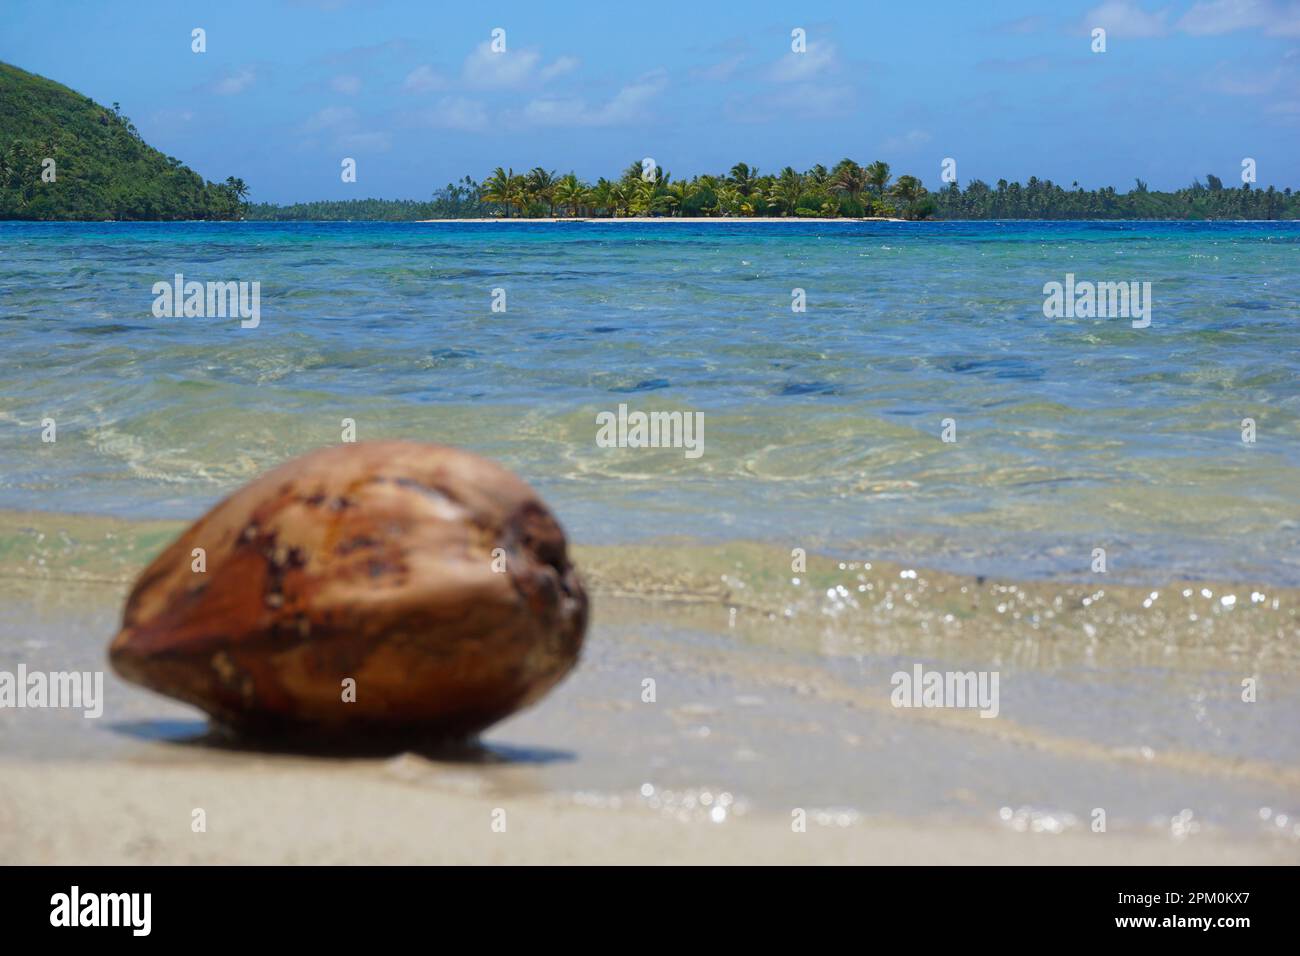 Une noix de coco sur la mer et un îlot tropical dans le lagon de l'île de Huahine, Polynésie française, océan Pacifique Sud Banque D'Images